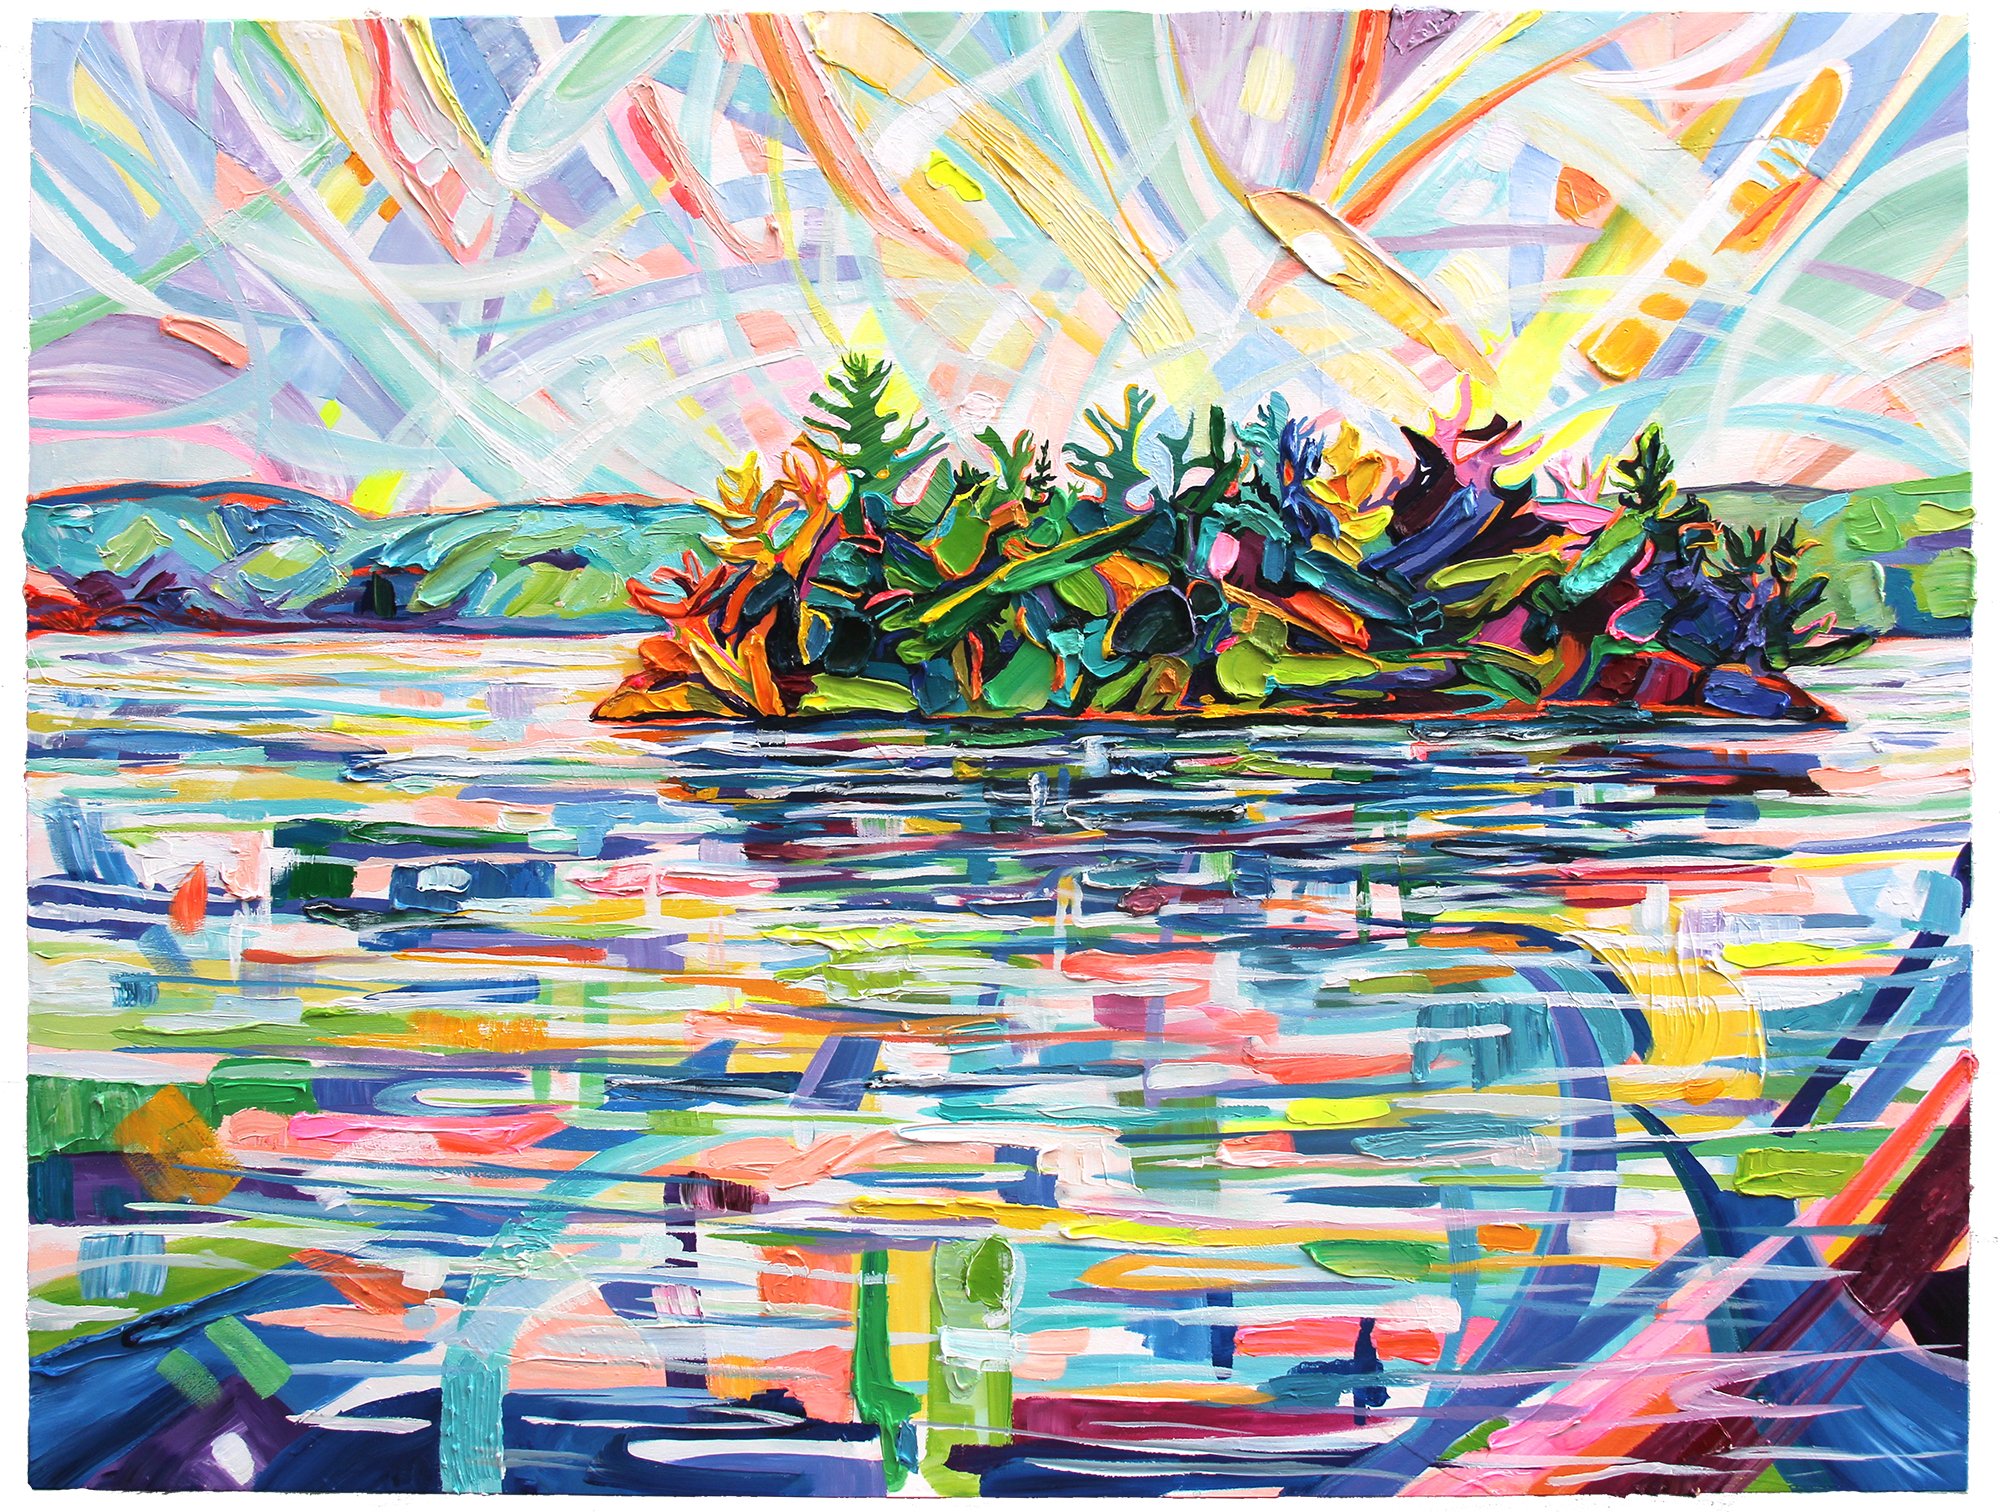 Lake of Two Rivers Island, 36 x 48", acrylic on panel, 2021